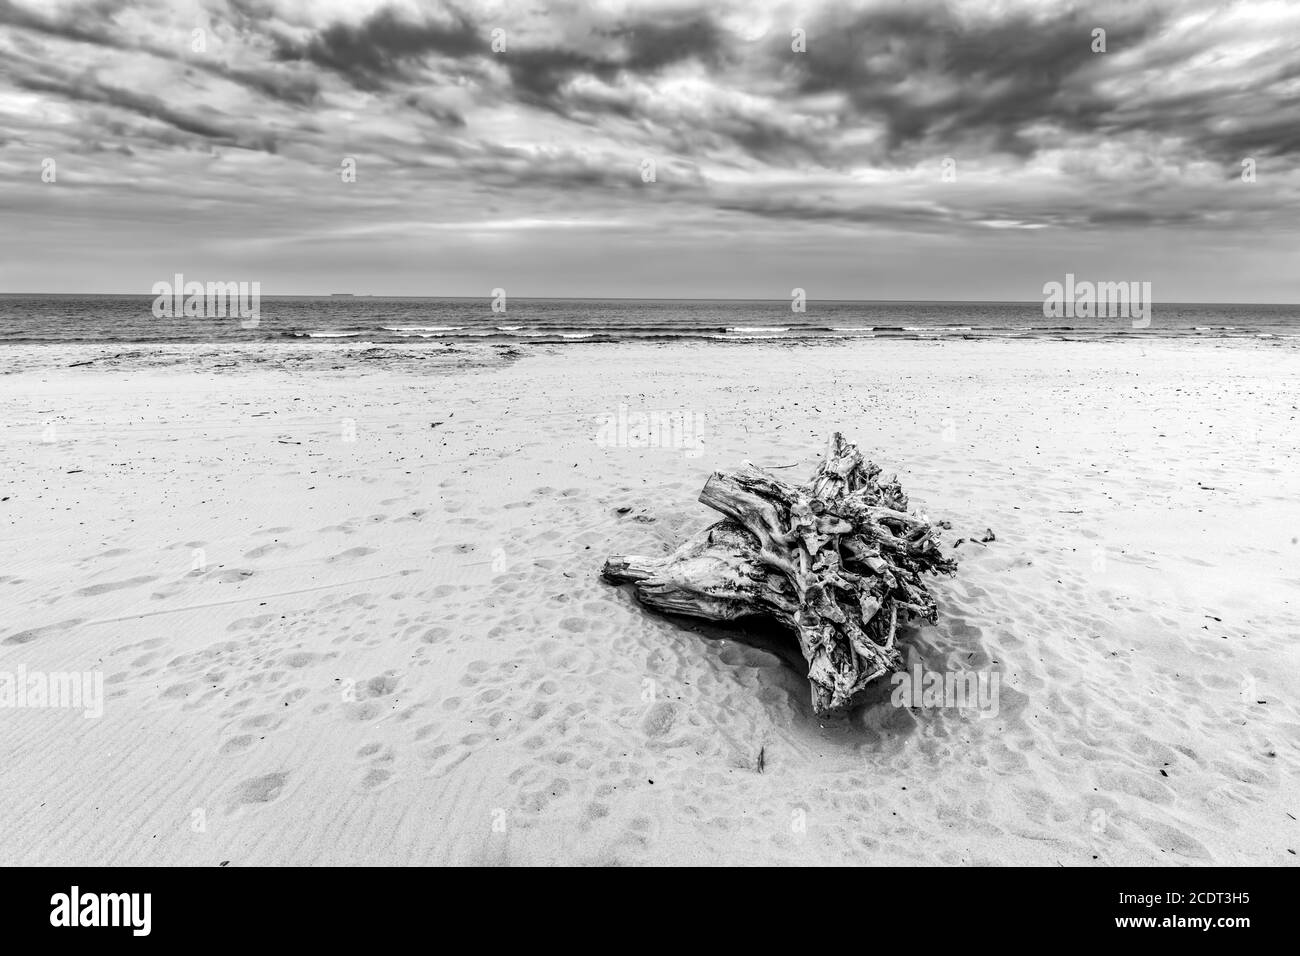 Tronc d'arbre sur la plage. Nuageux, orageux. Noir et blanc Banque D'Images